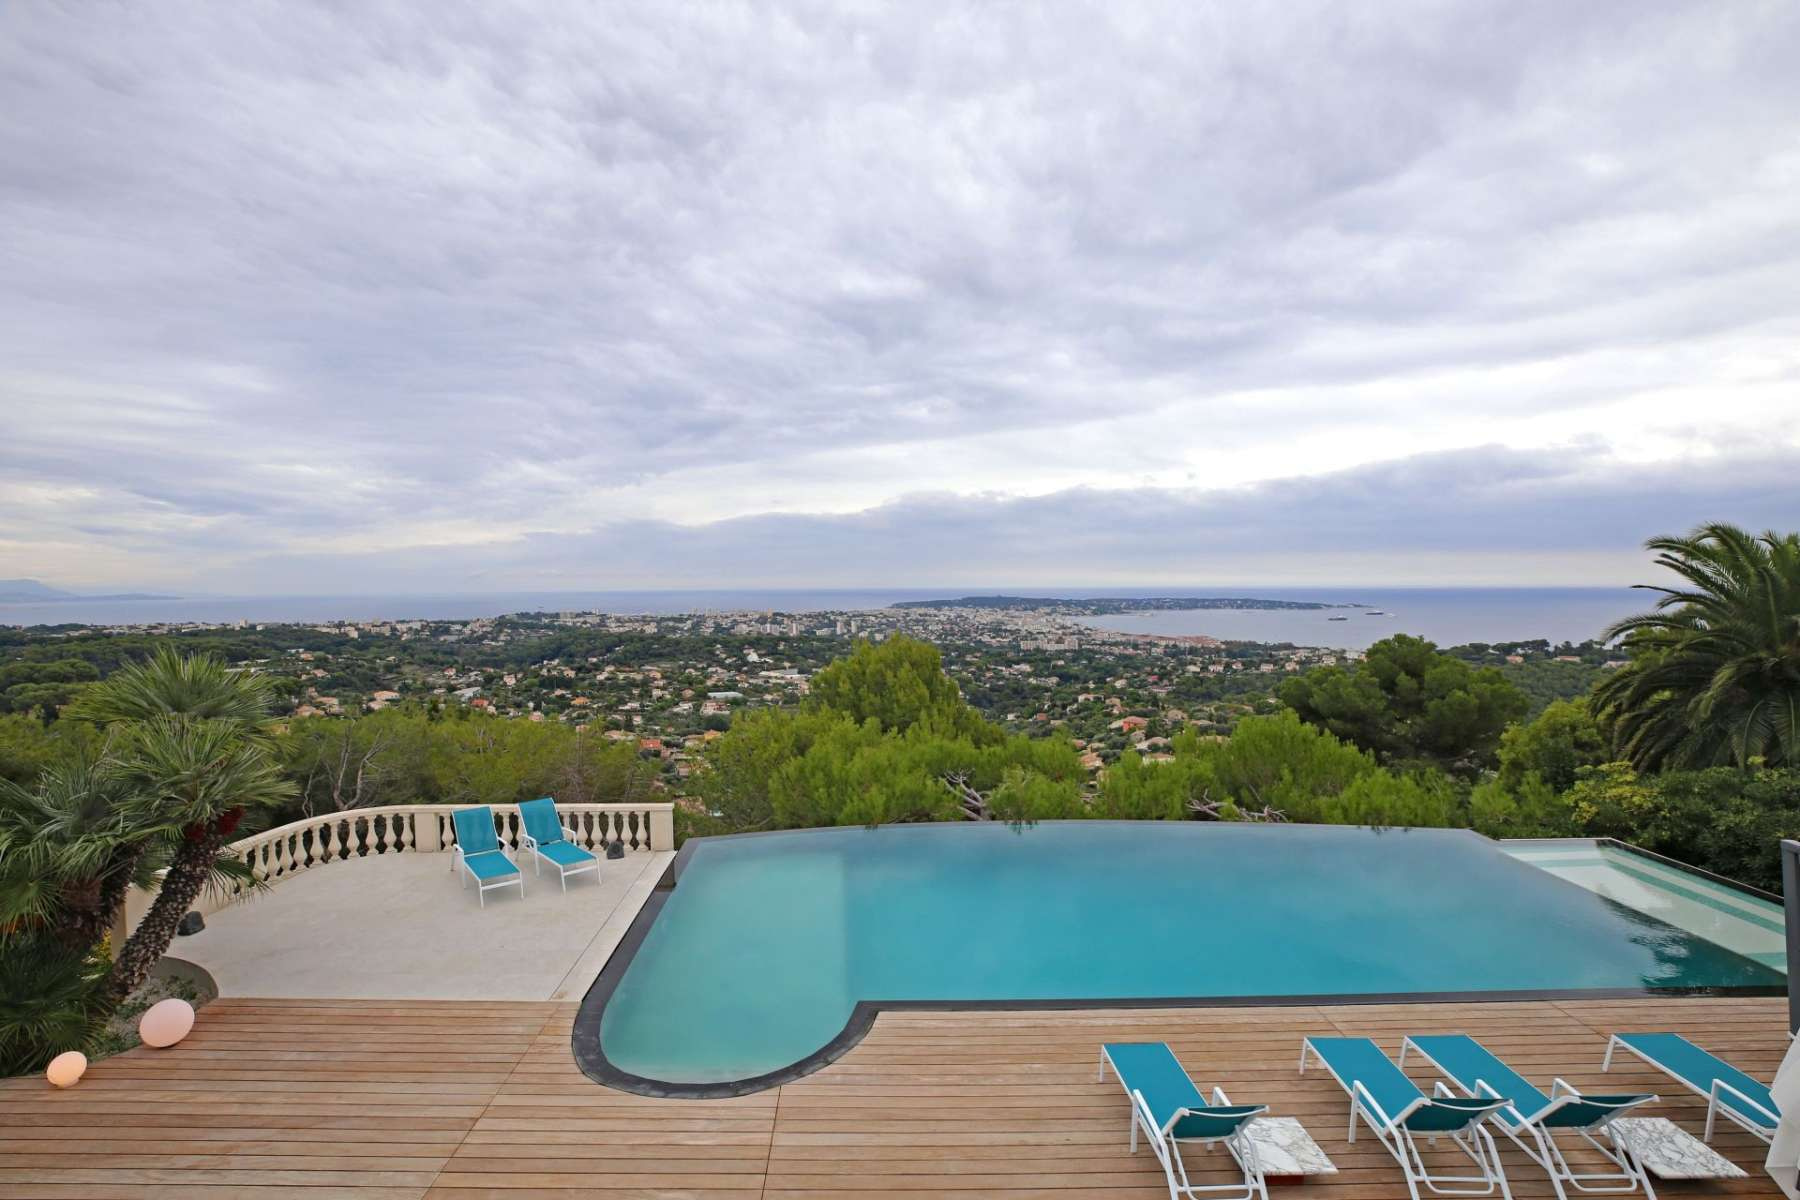 Location villa aux prestations luxueuses à Cannes avec vue mer